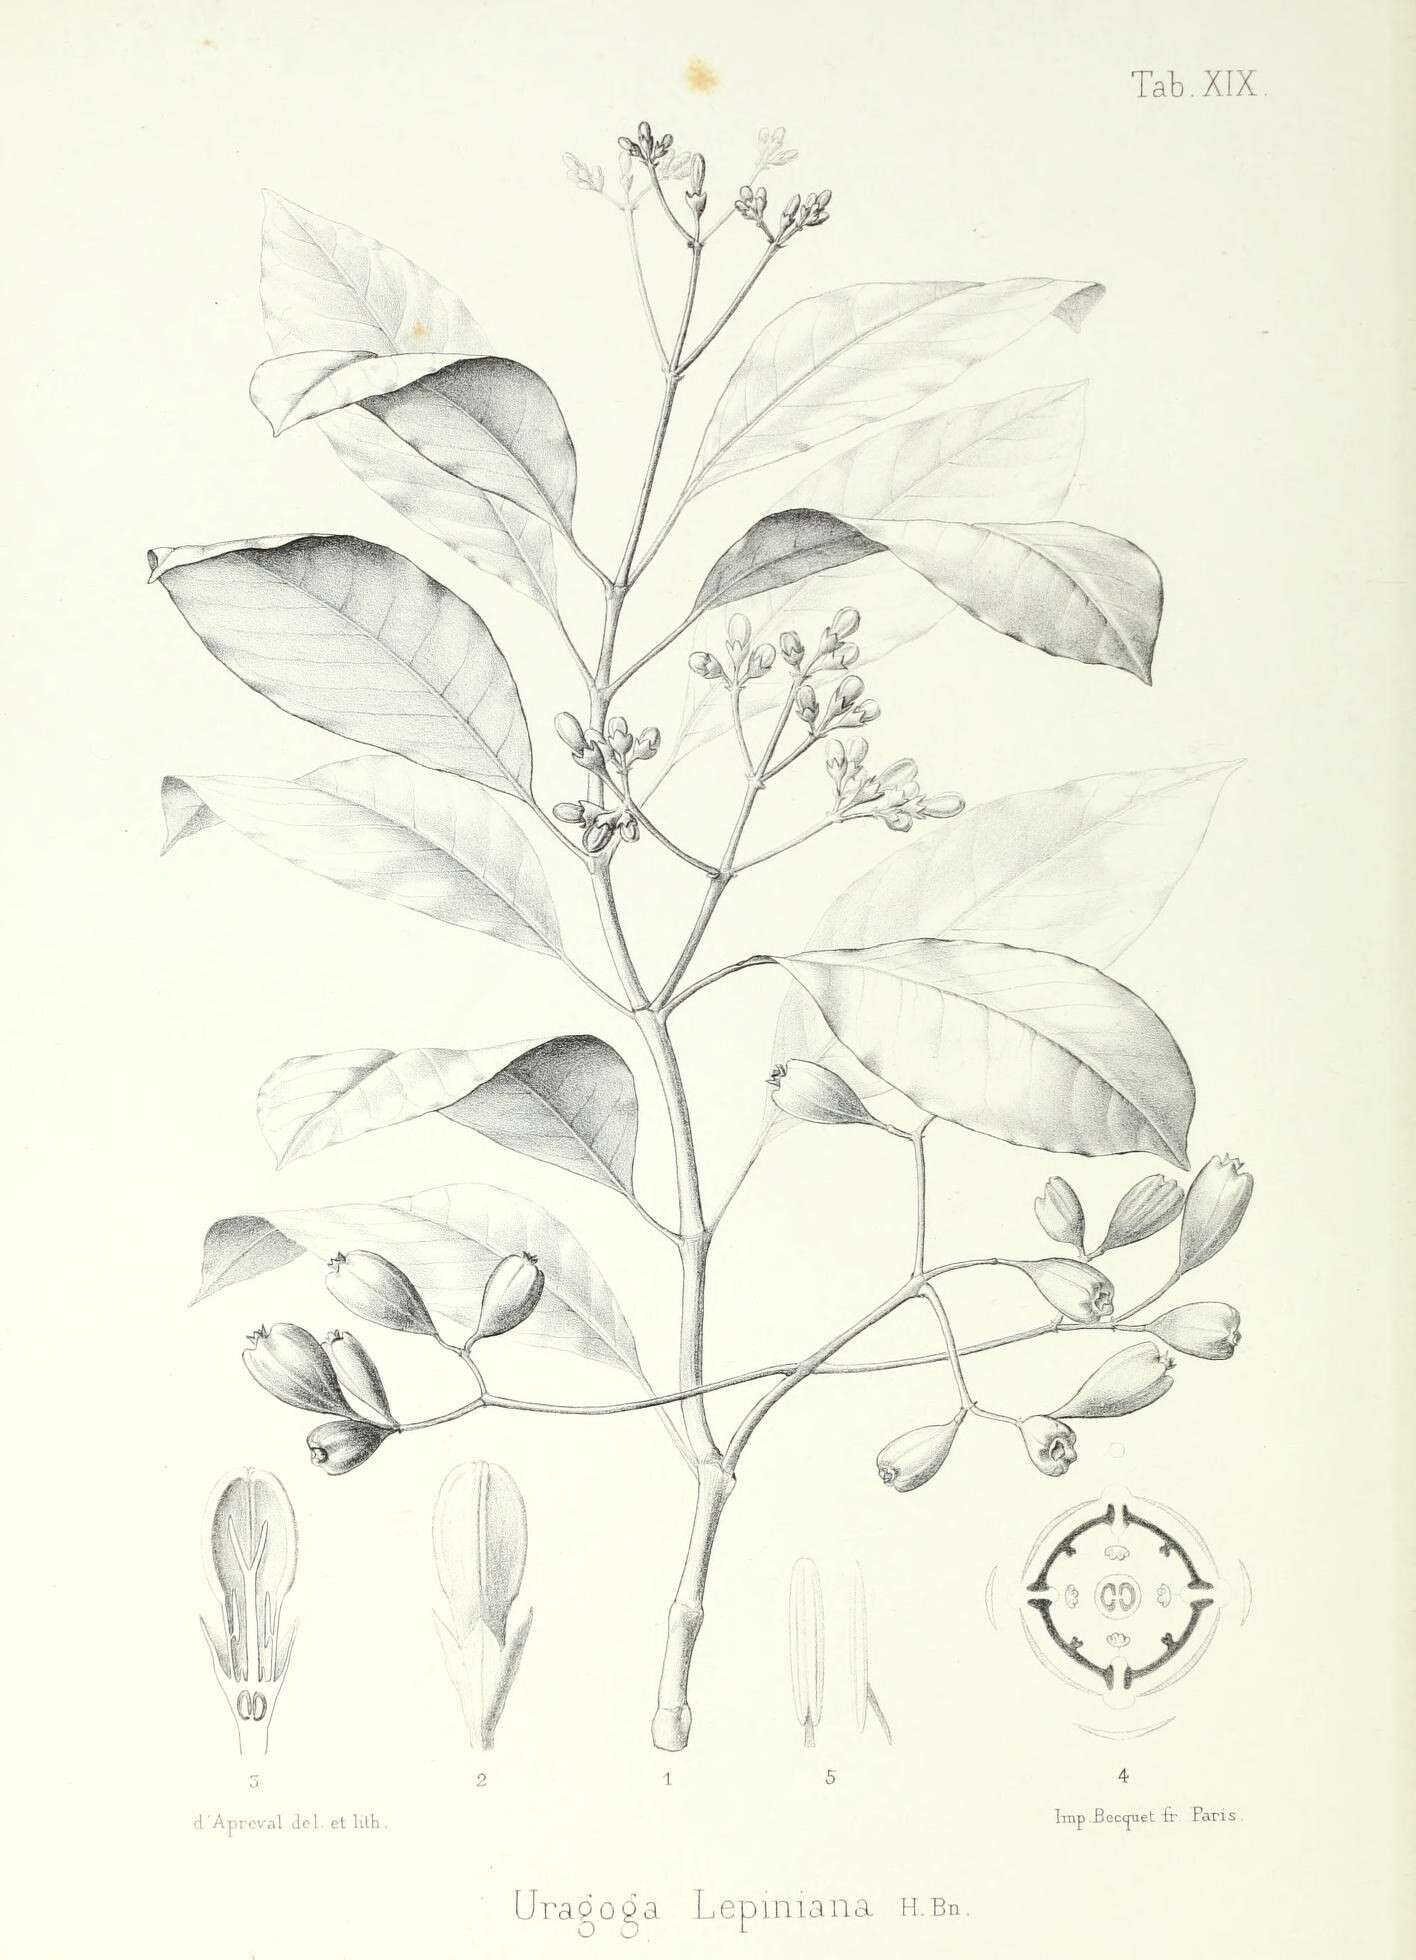 Image of Psychotria cernua Nadeaud